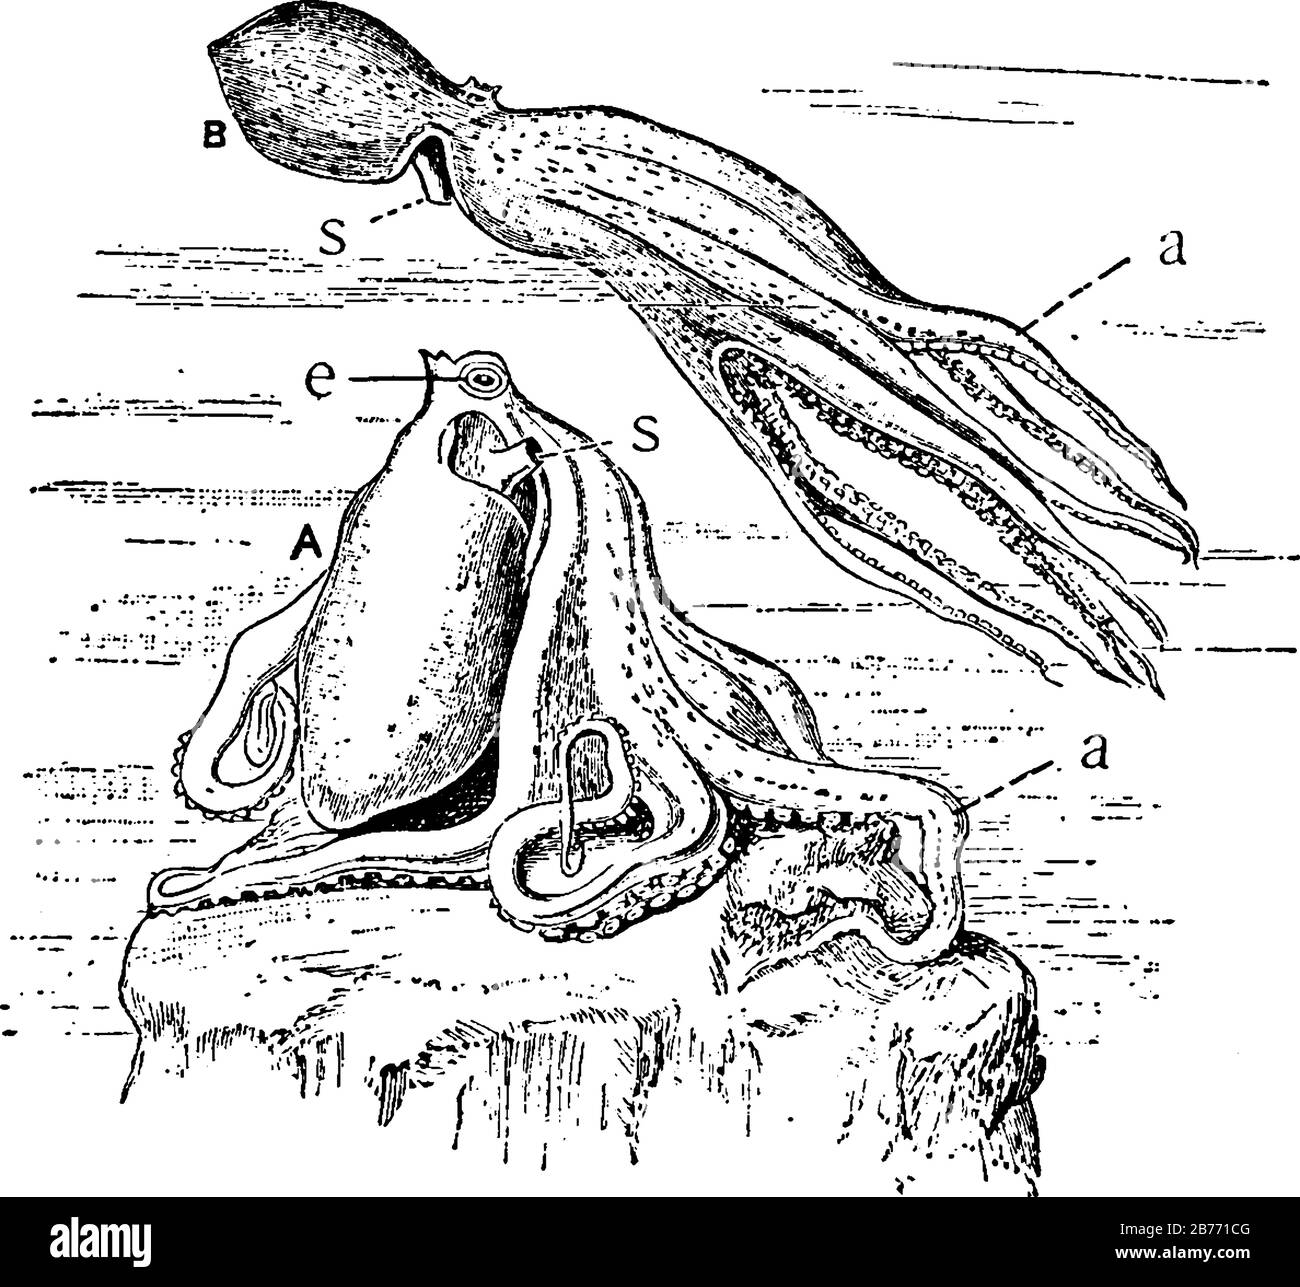 Der Teufelsfisch (Octopus) mit den beschrifteten Teilen, A, in Ruhe; B, Schwimmen. A, Arme, mit Saugern auf dem inneren Aspekt; e, Auge und s, Siphon oder Trichter, Stock Vektor